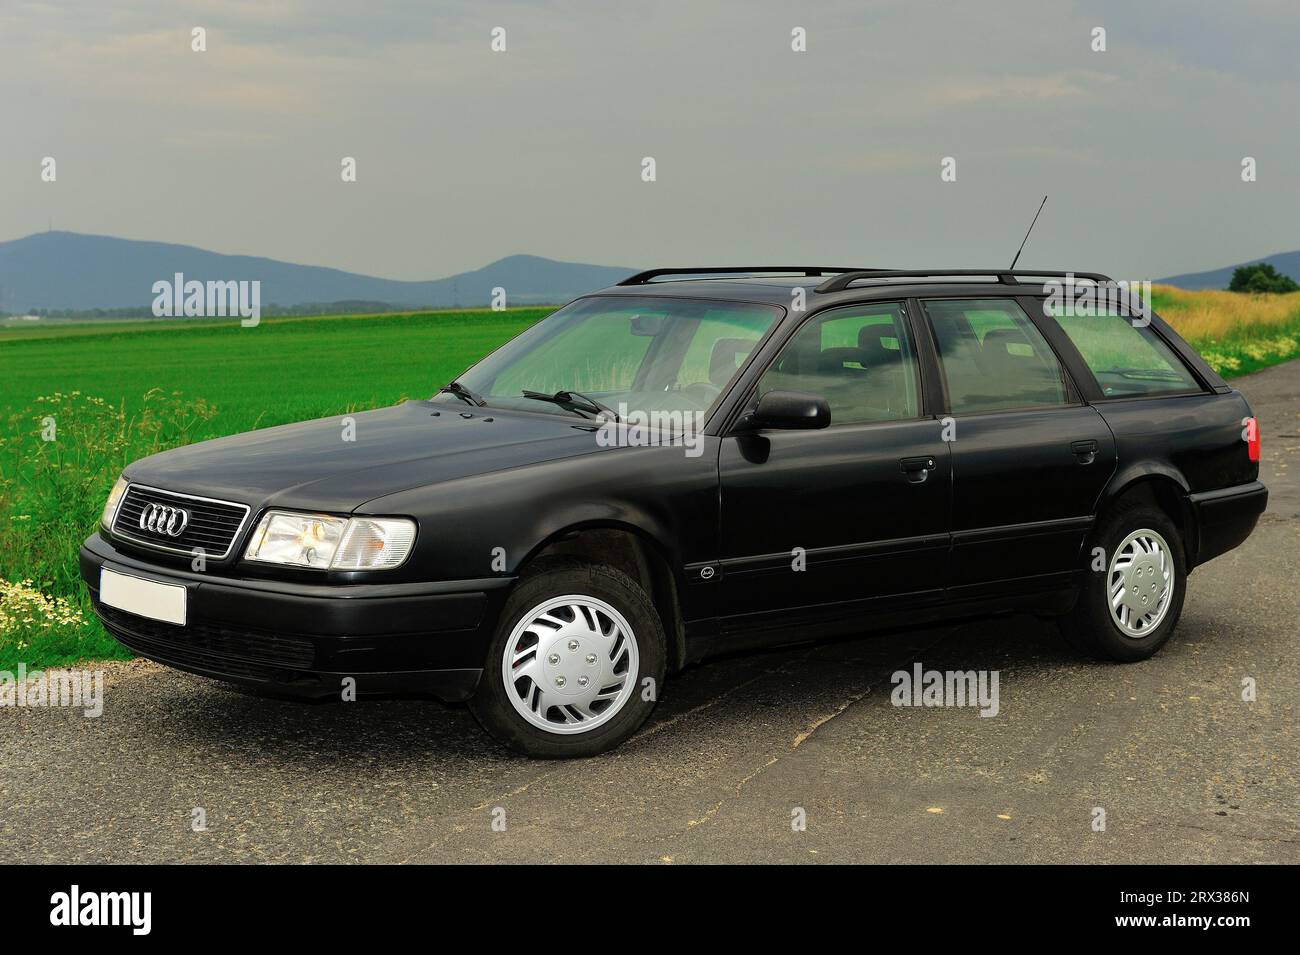 Windabweiser Außenmontage für Audi 100 Avant (4A,C4) 1990-1994